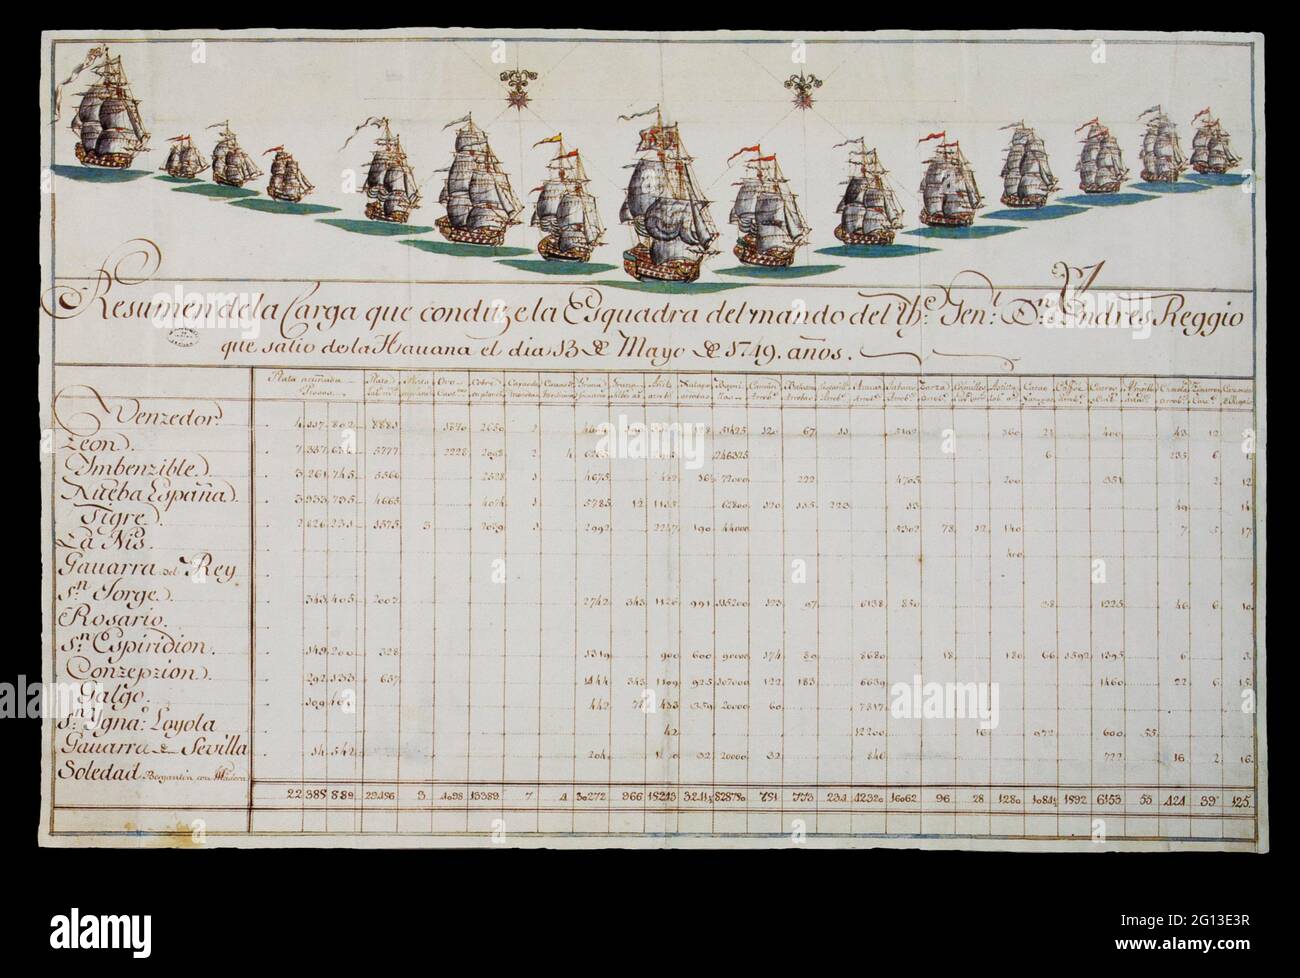 Manifiesto de consolidación de la flota española del tesoro comandada por el Capitán General de la marina Andrés Reggio, 1749. Archivo General de las Indias. Foto de stock